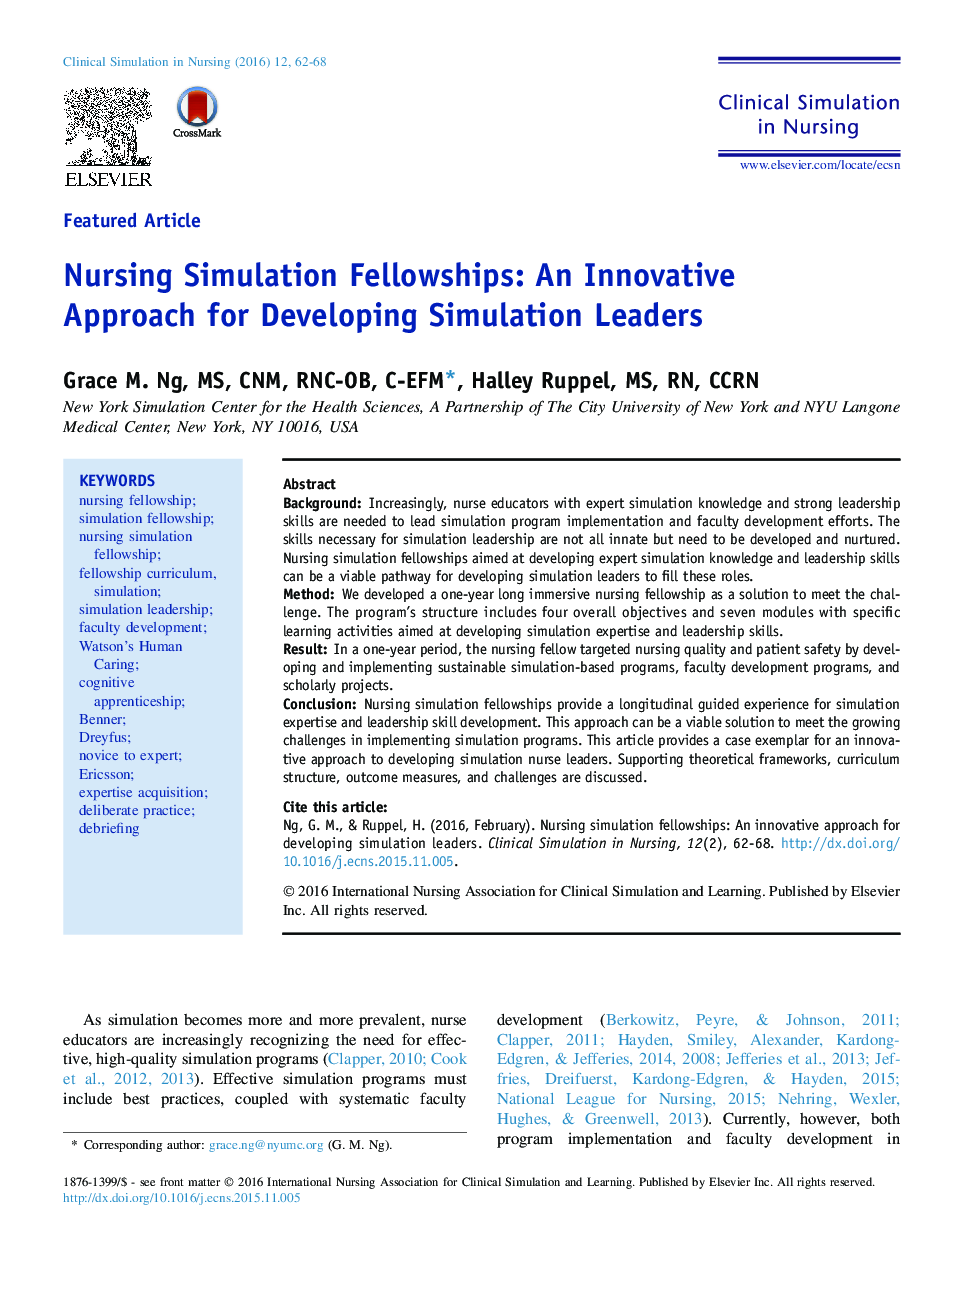 کمکهای شبیه سازی پرستاری: رویکرد نوآورانه برای توسعه رهبران شبیه سازی